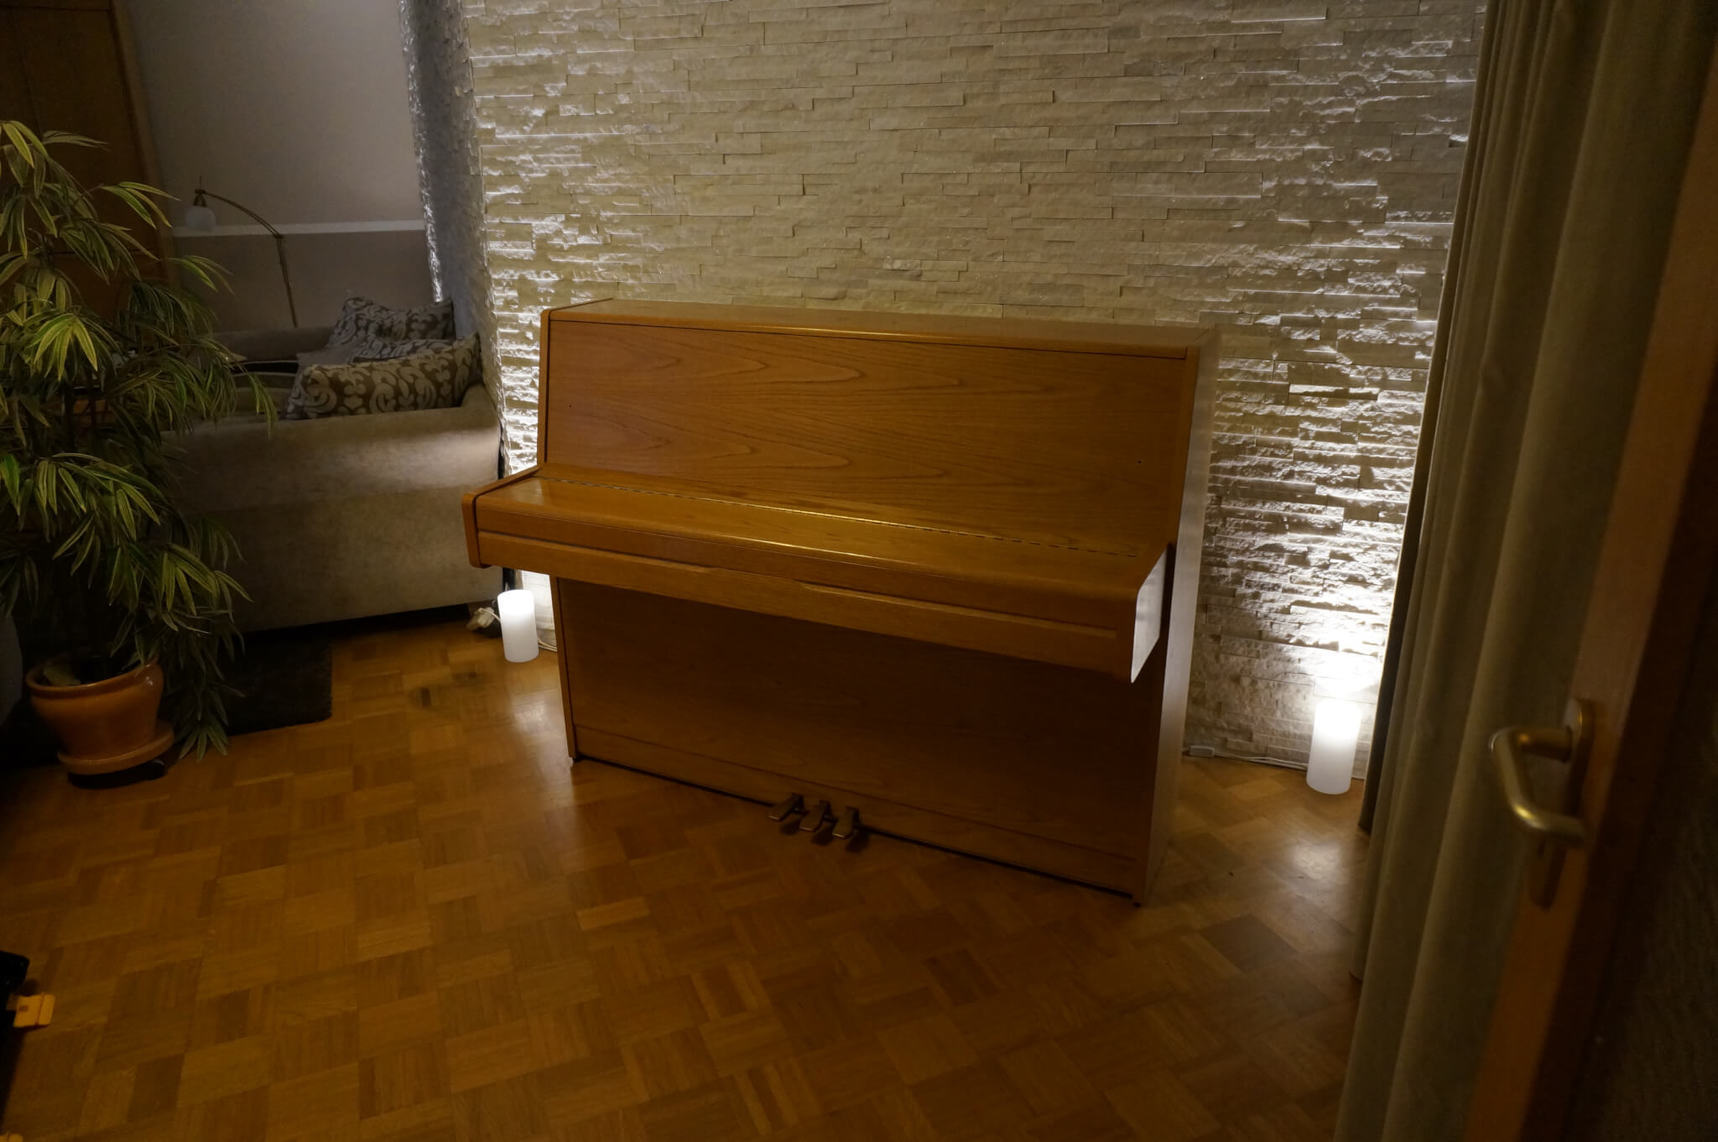 resimdo Klebefolie Möbel Klavier Wohnzimmer Beispiel vorher